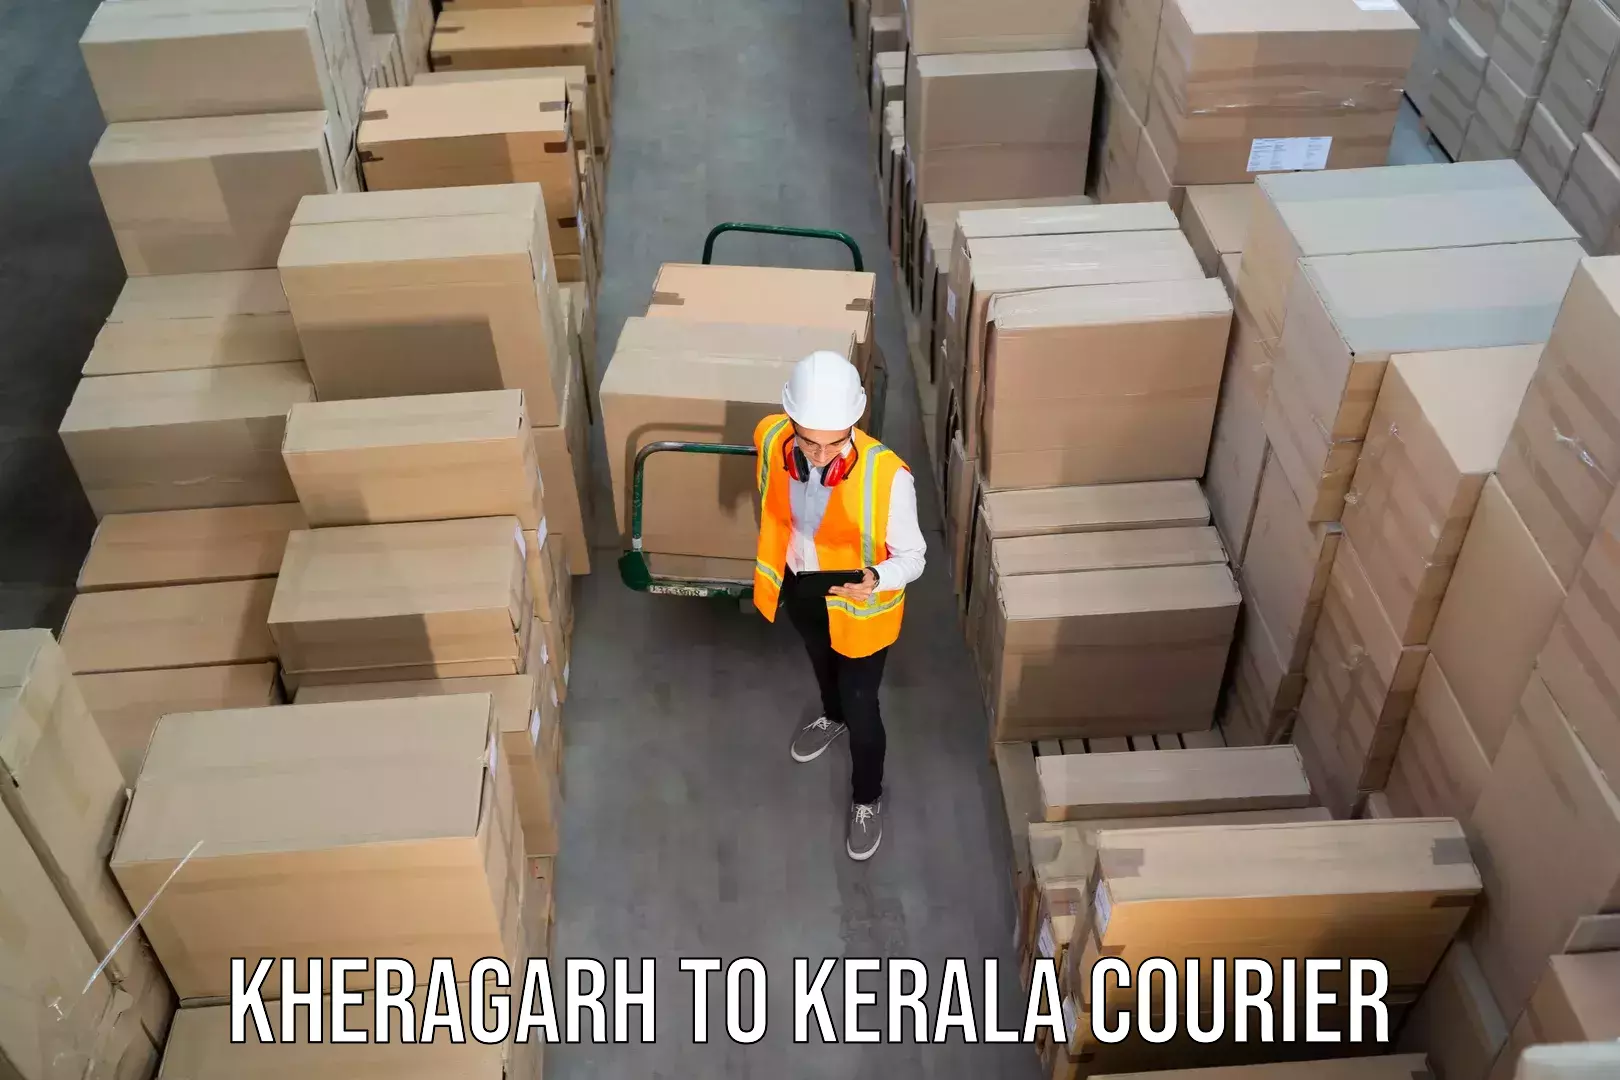 Dynamic courier operations Kheragarh to Thiruvananthapuram